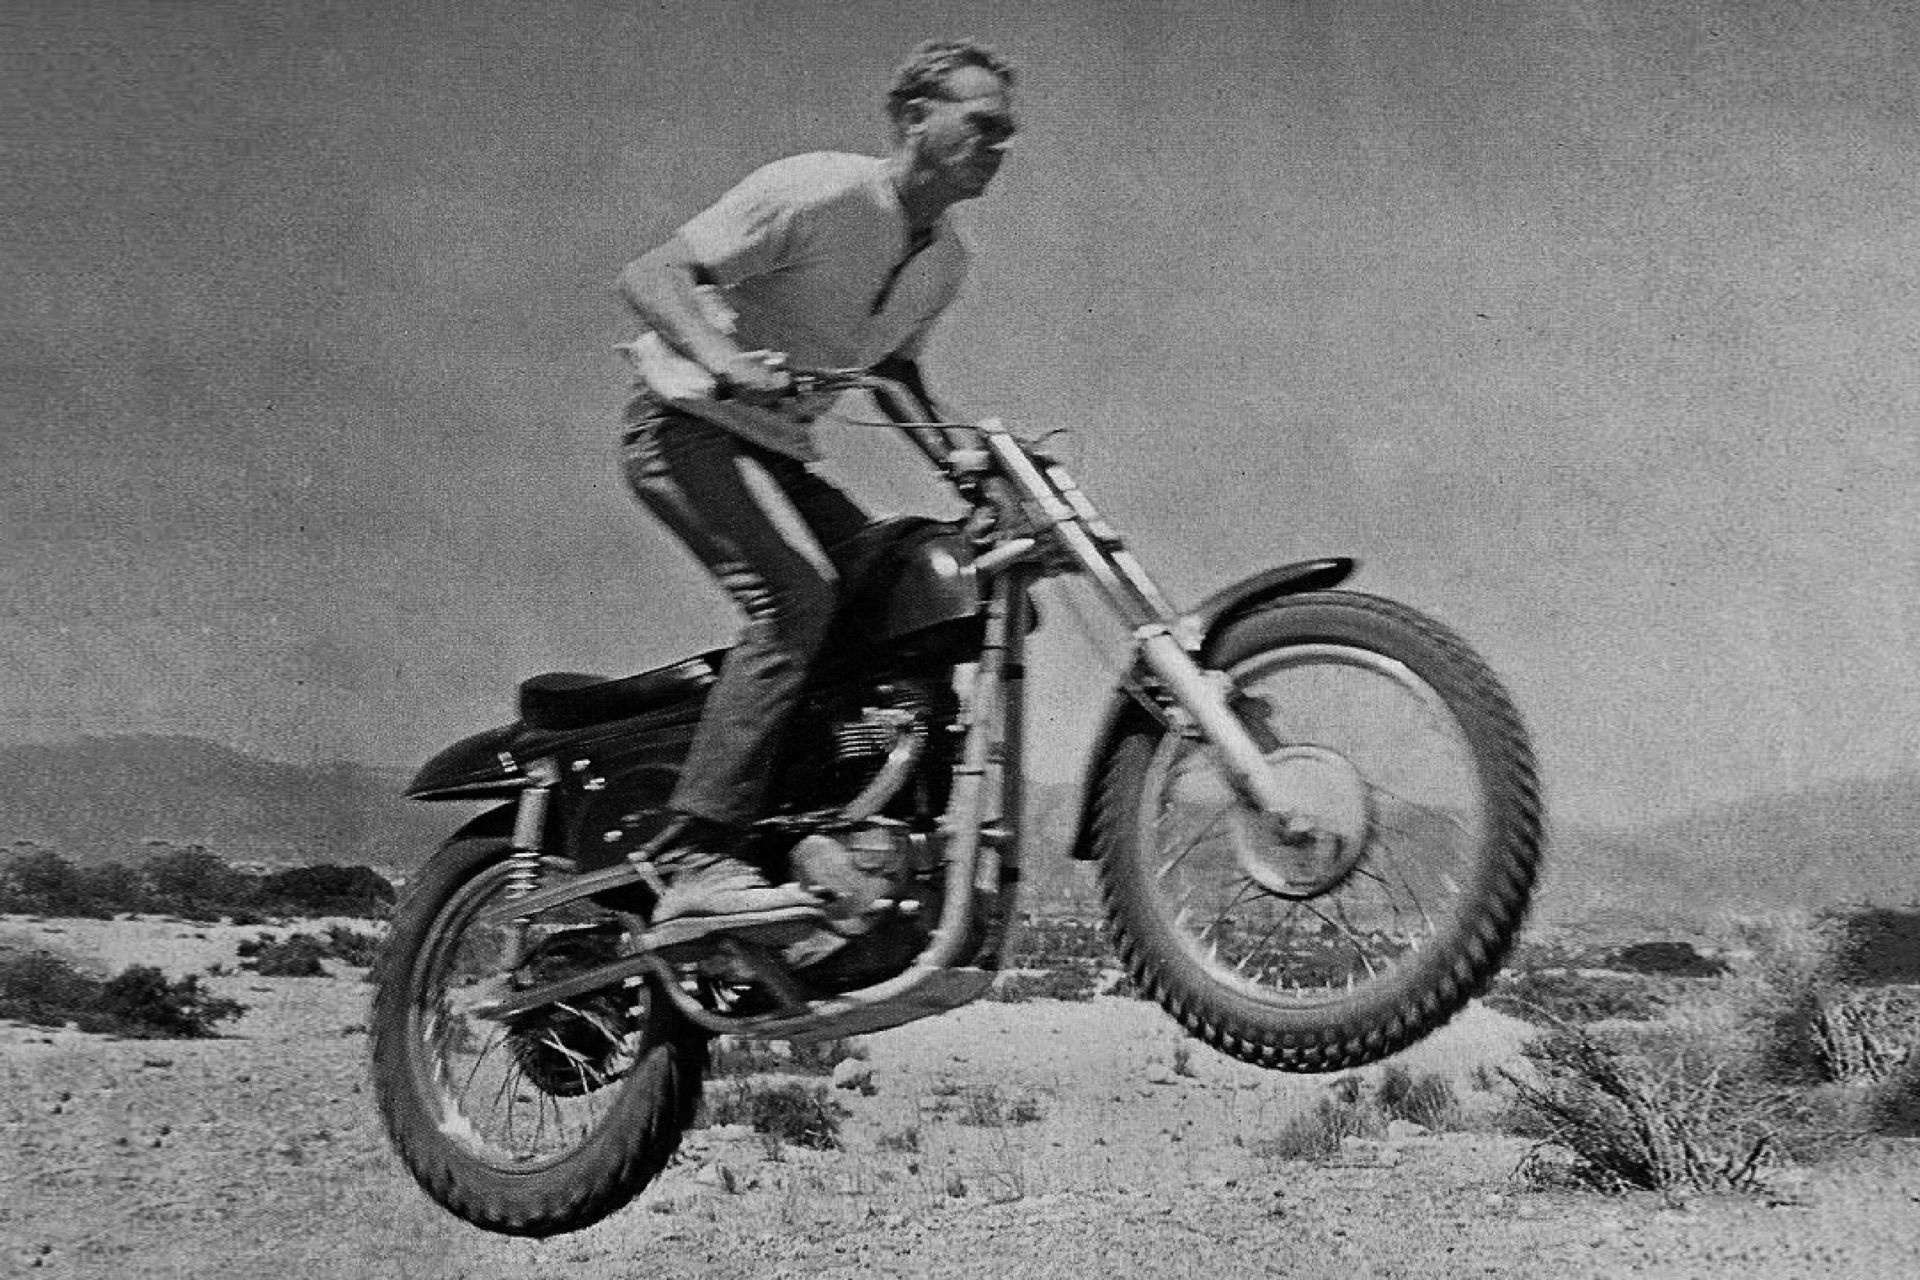 A black & white photo of Steve McQueen jumping his Metisse Desert Racer in the Californian Desert in the 1960s.